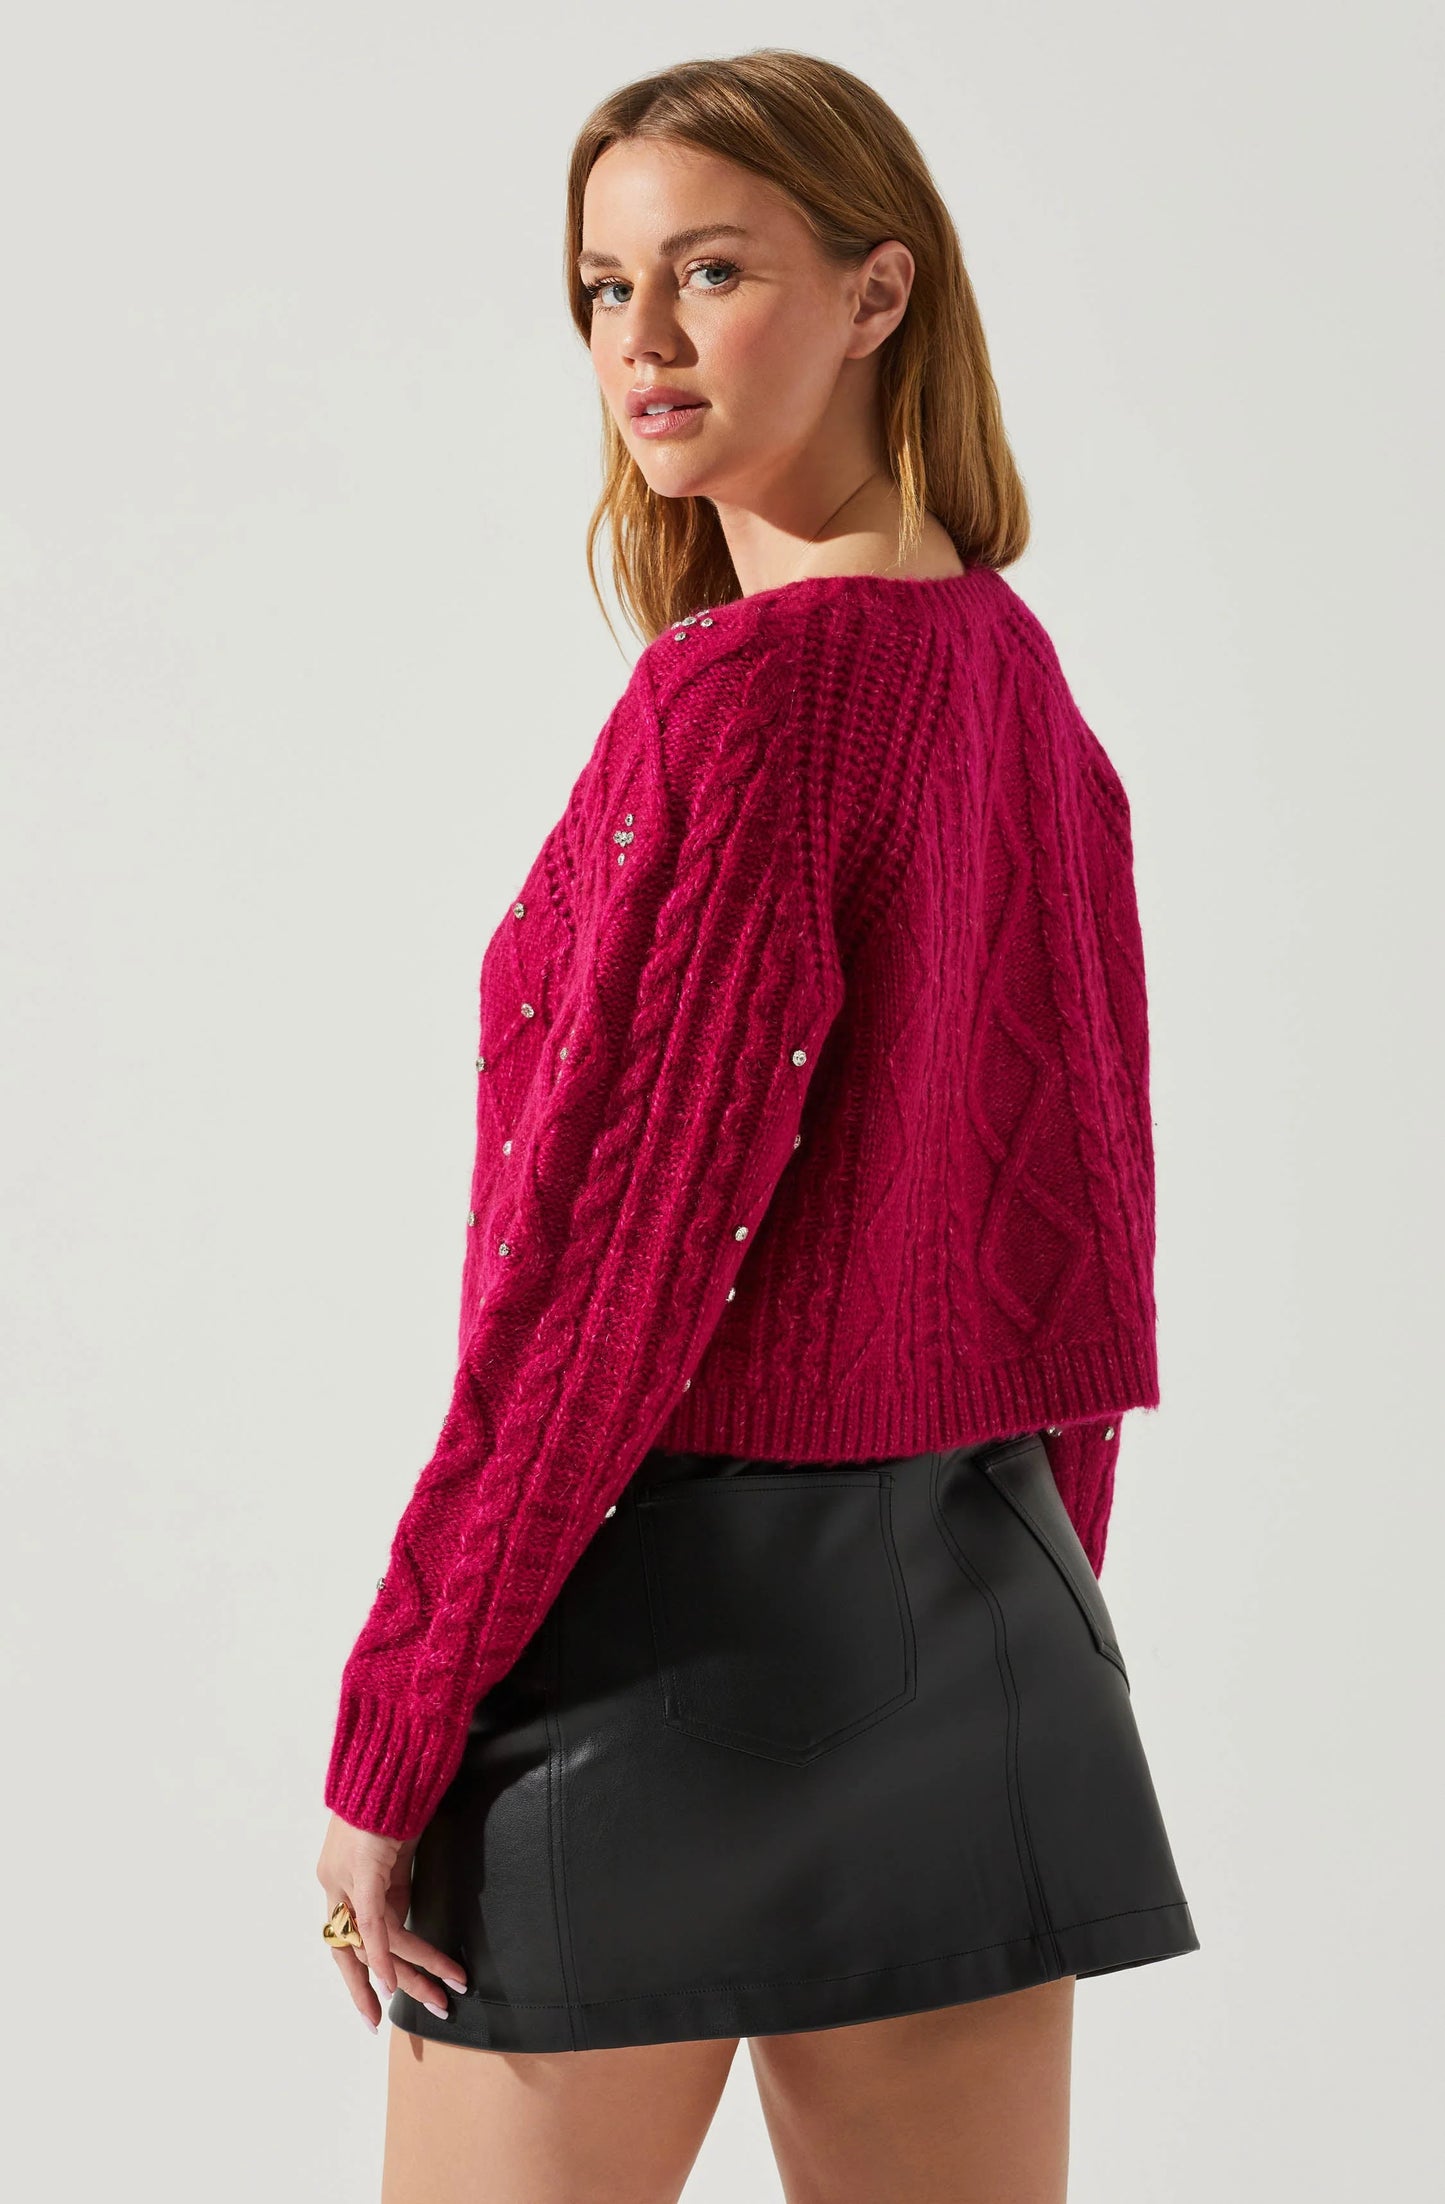 Madison Rhinestone Embellished Sweater